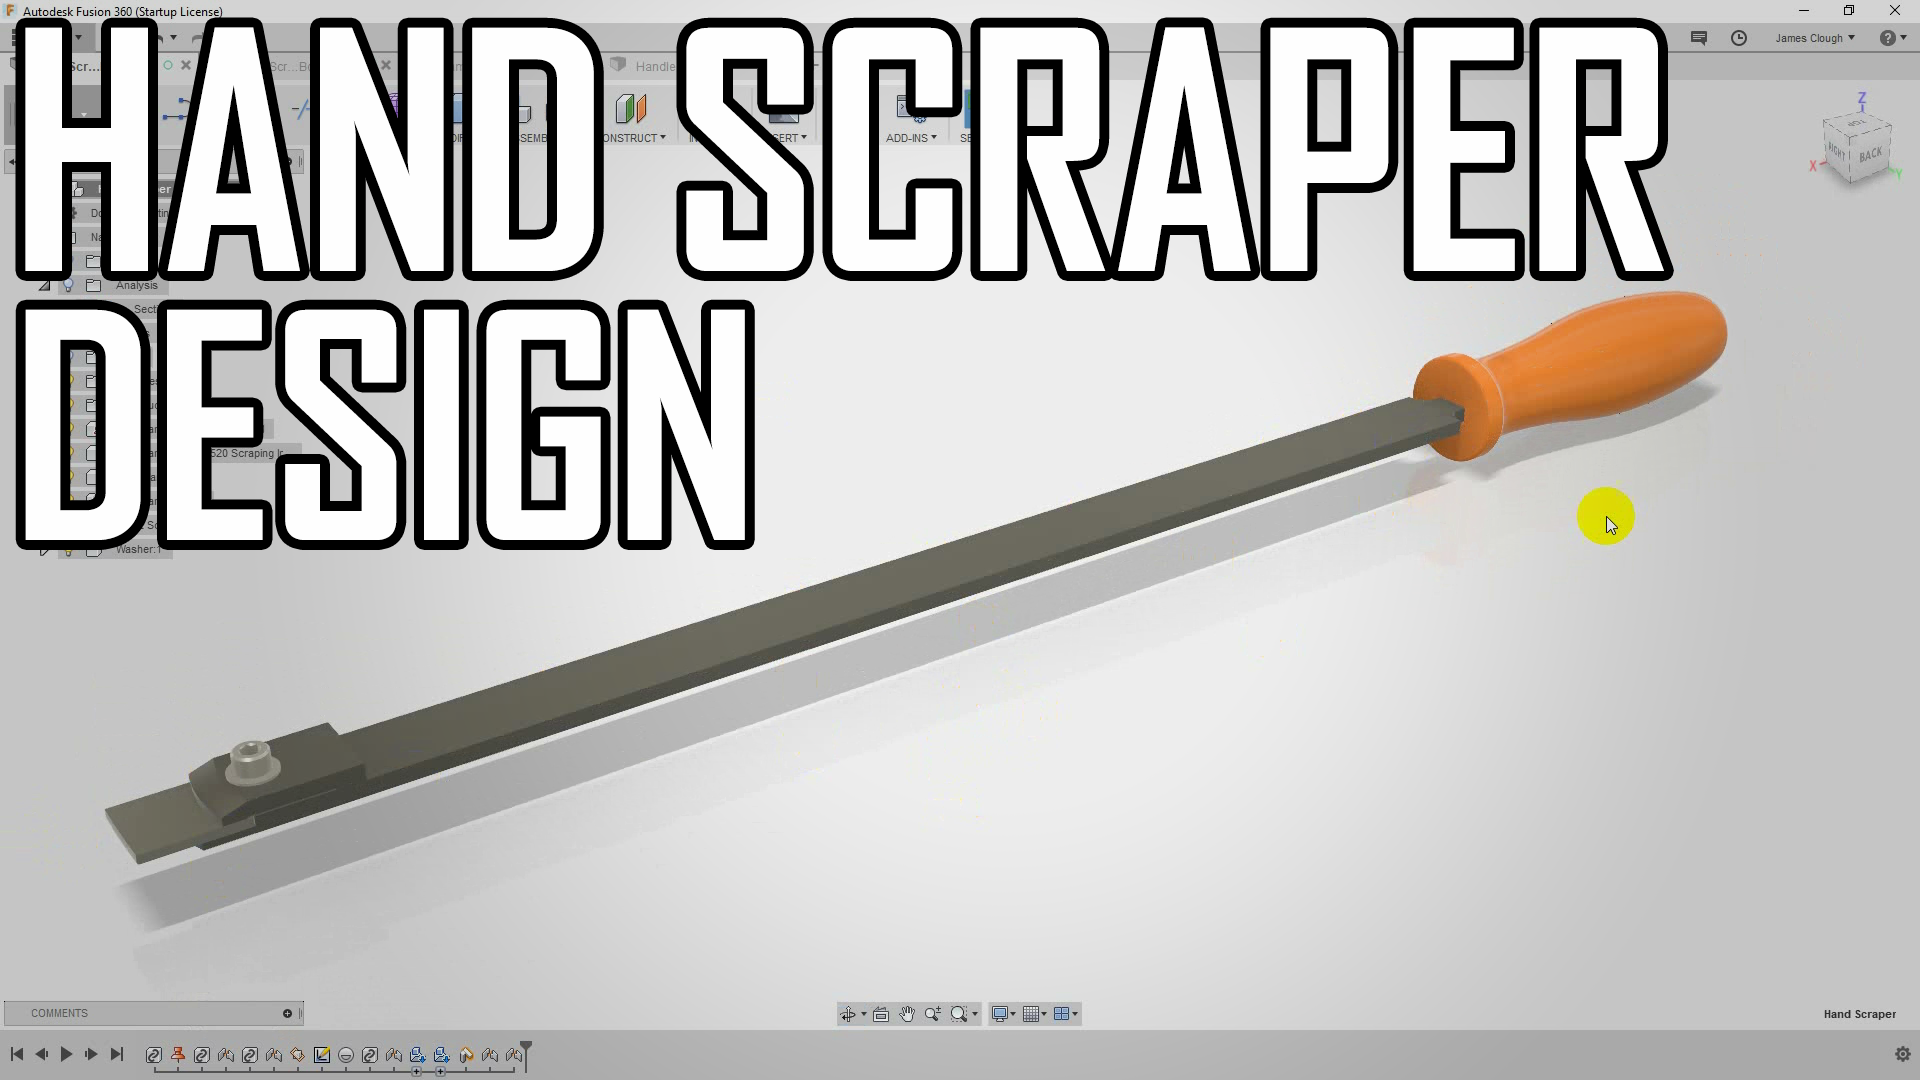 T me ccs scraper. Hand Scrapper. Fansly Scraper. DIY Carbide Insert Metal Scraper.